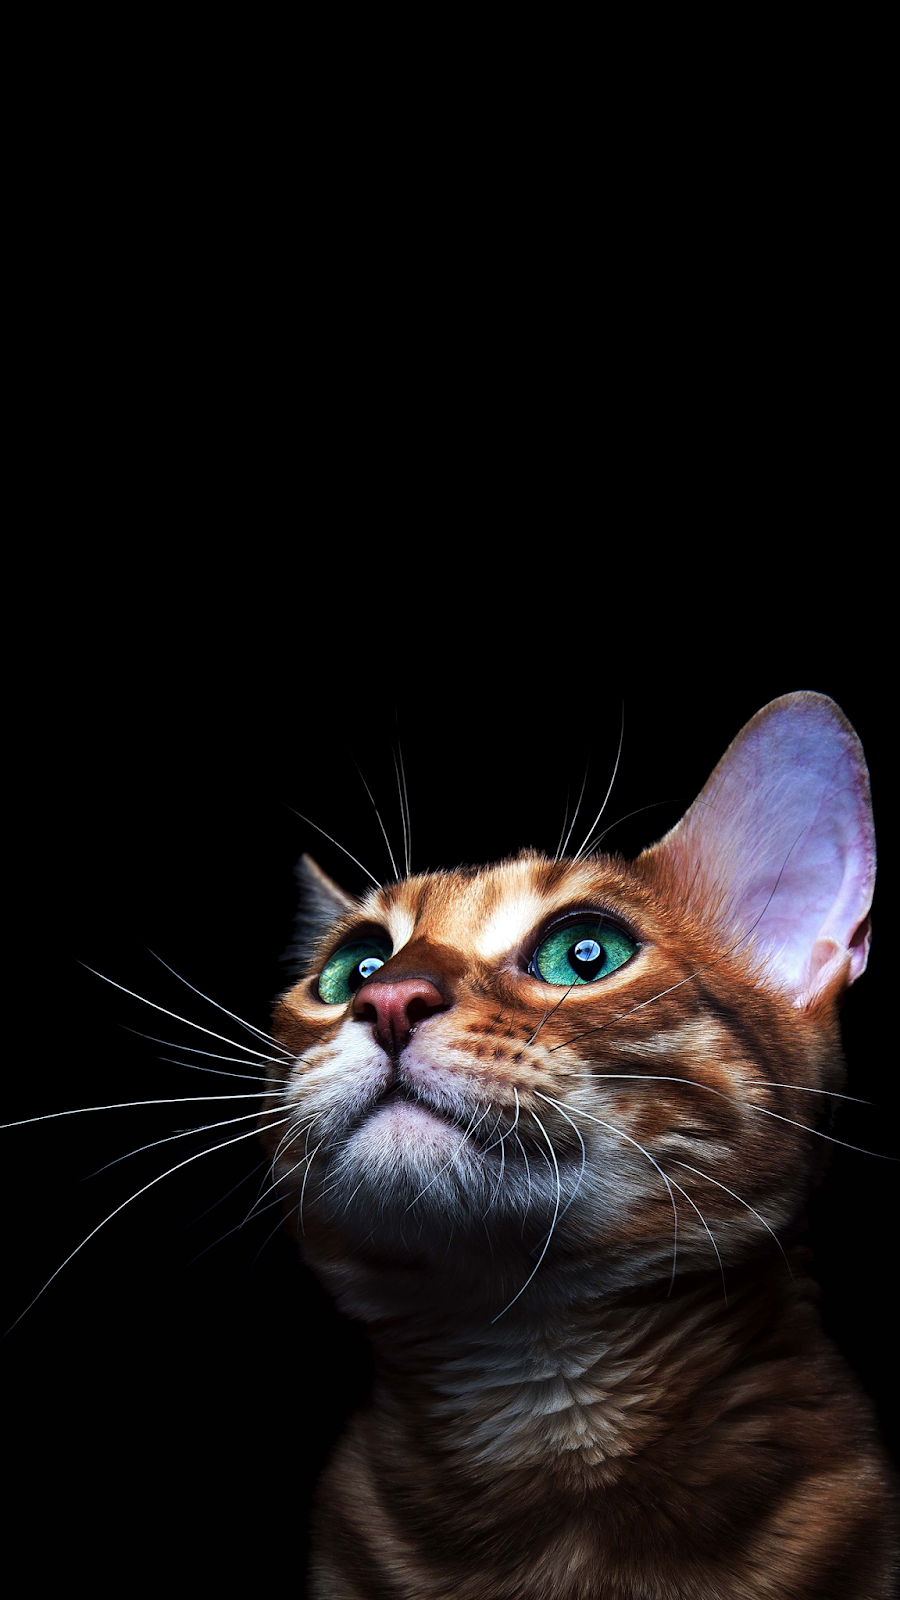 4K CAT AMOLED PHONE WALLPAPER. Ilustrasi karakter, Kucing cantik, Hewan